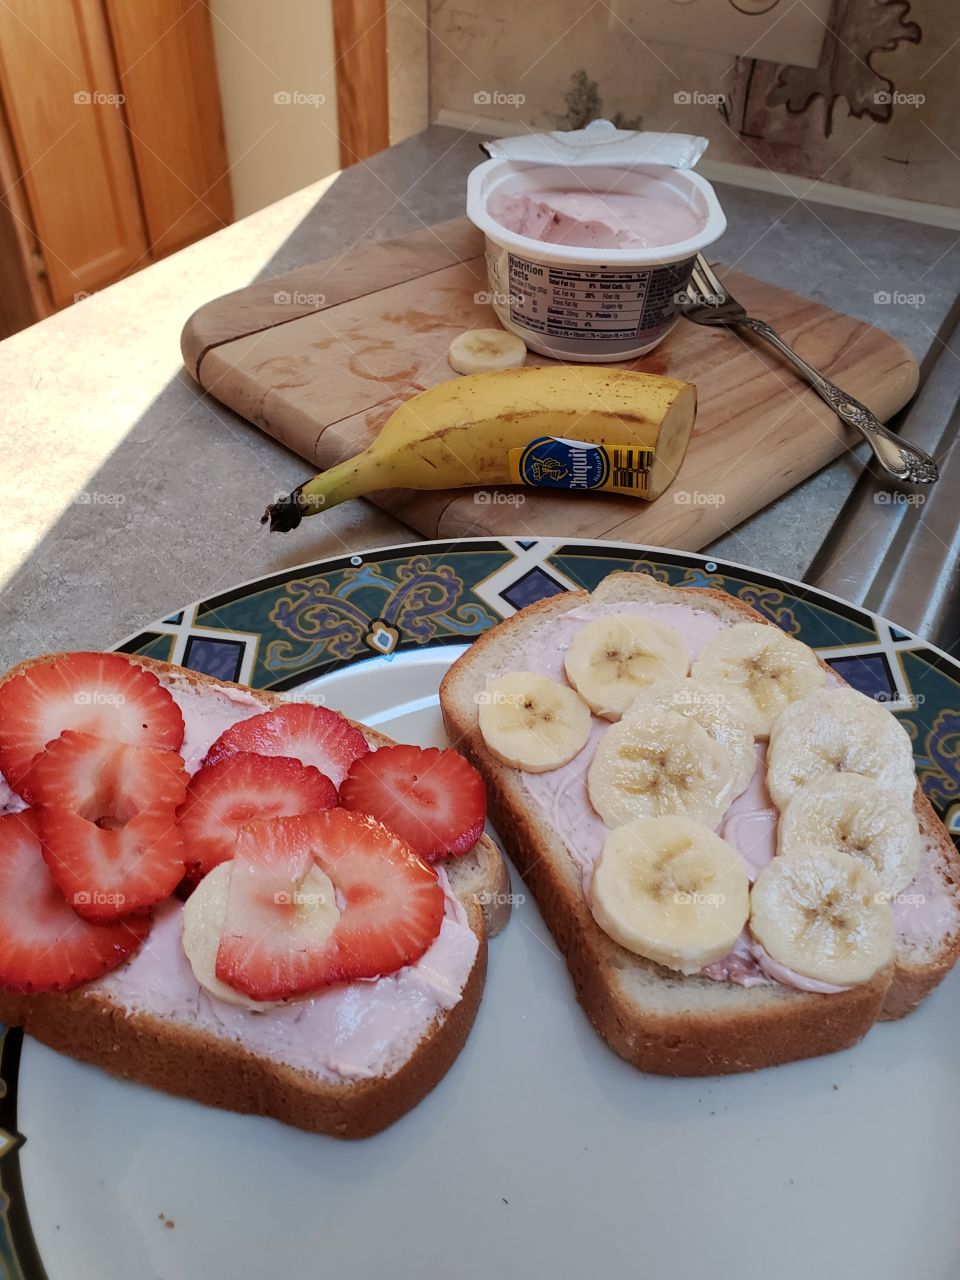 Strawberries and bananas and cream cheese yumminess